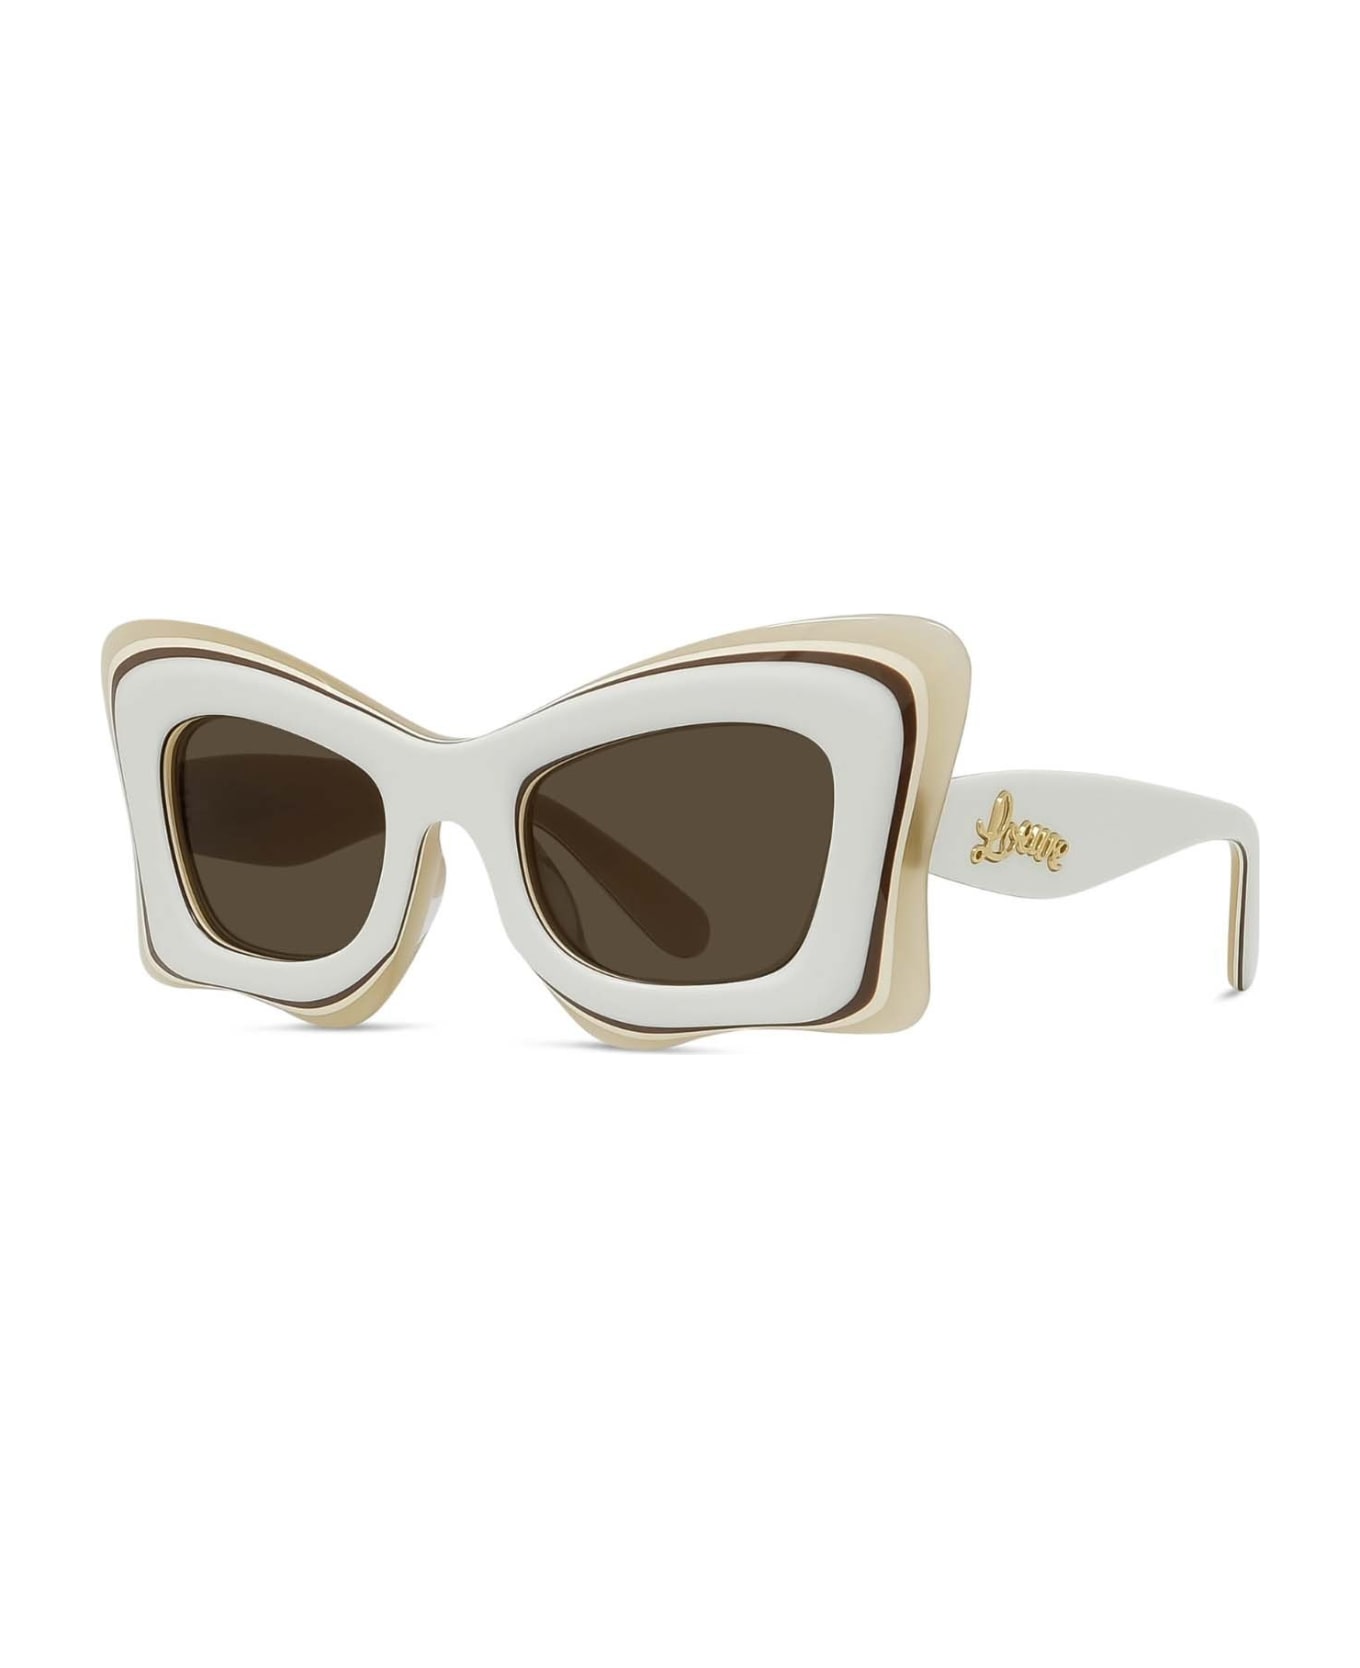 Loewe Sunglasses - Avorio/Marrone